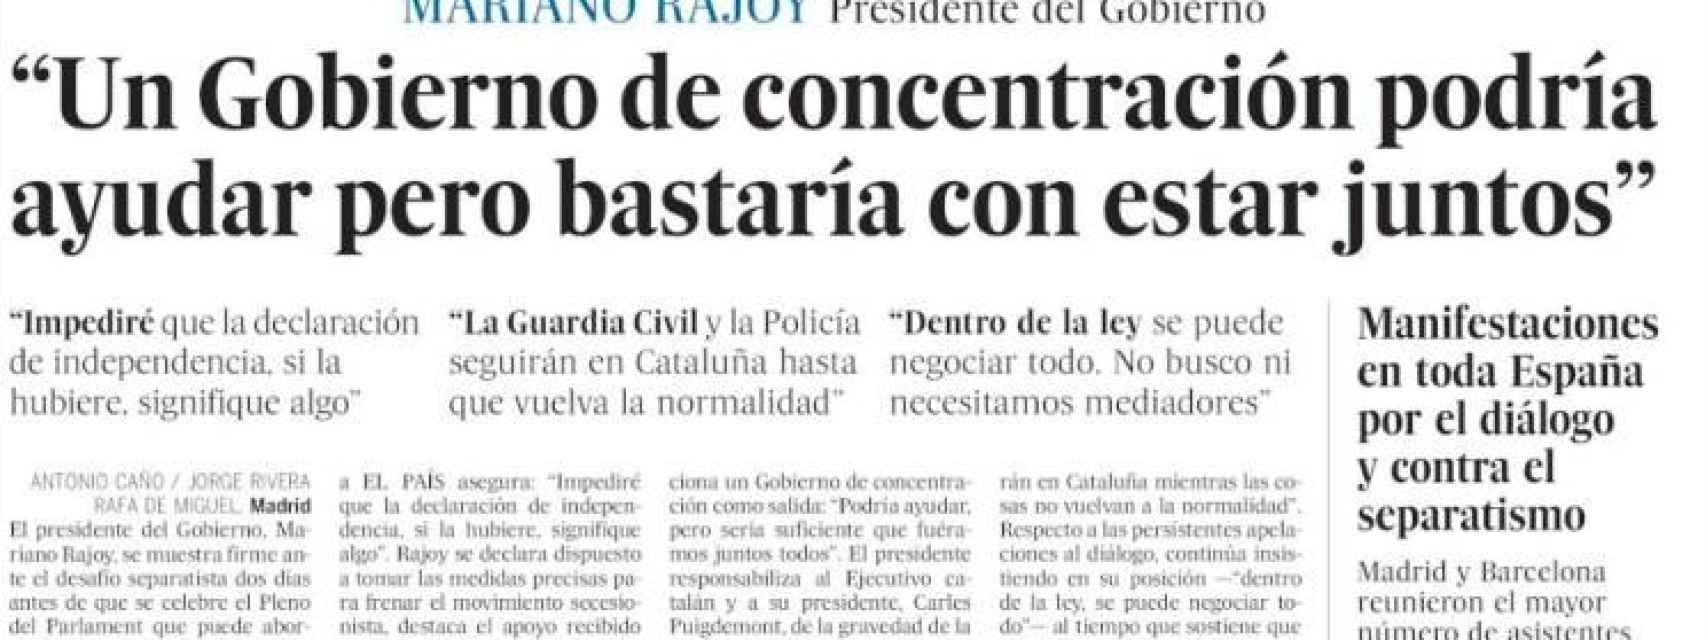 Imagen de la portada impresa de 'El País' de este domingo.